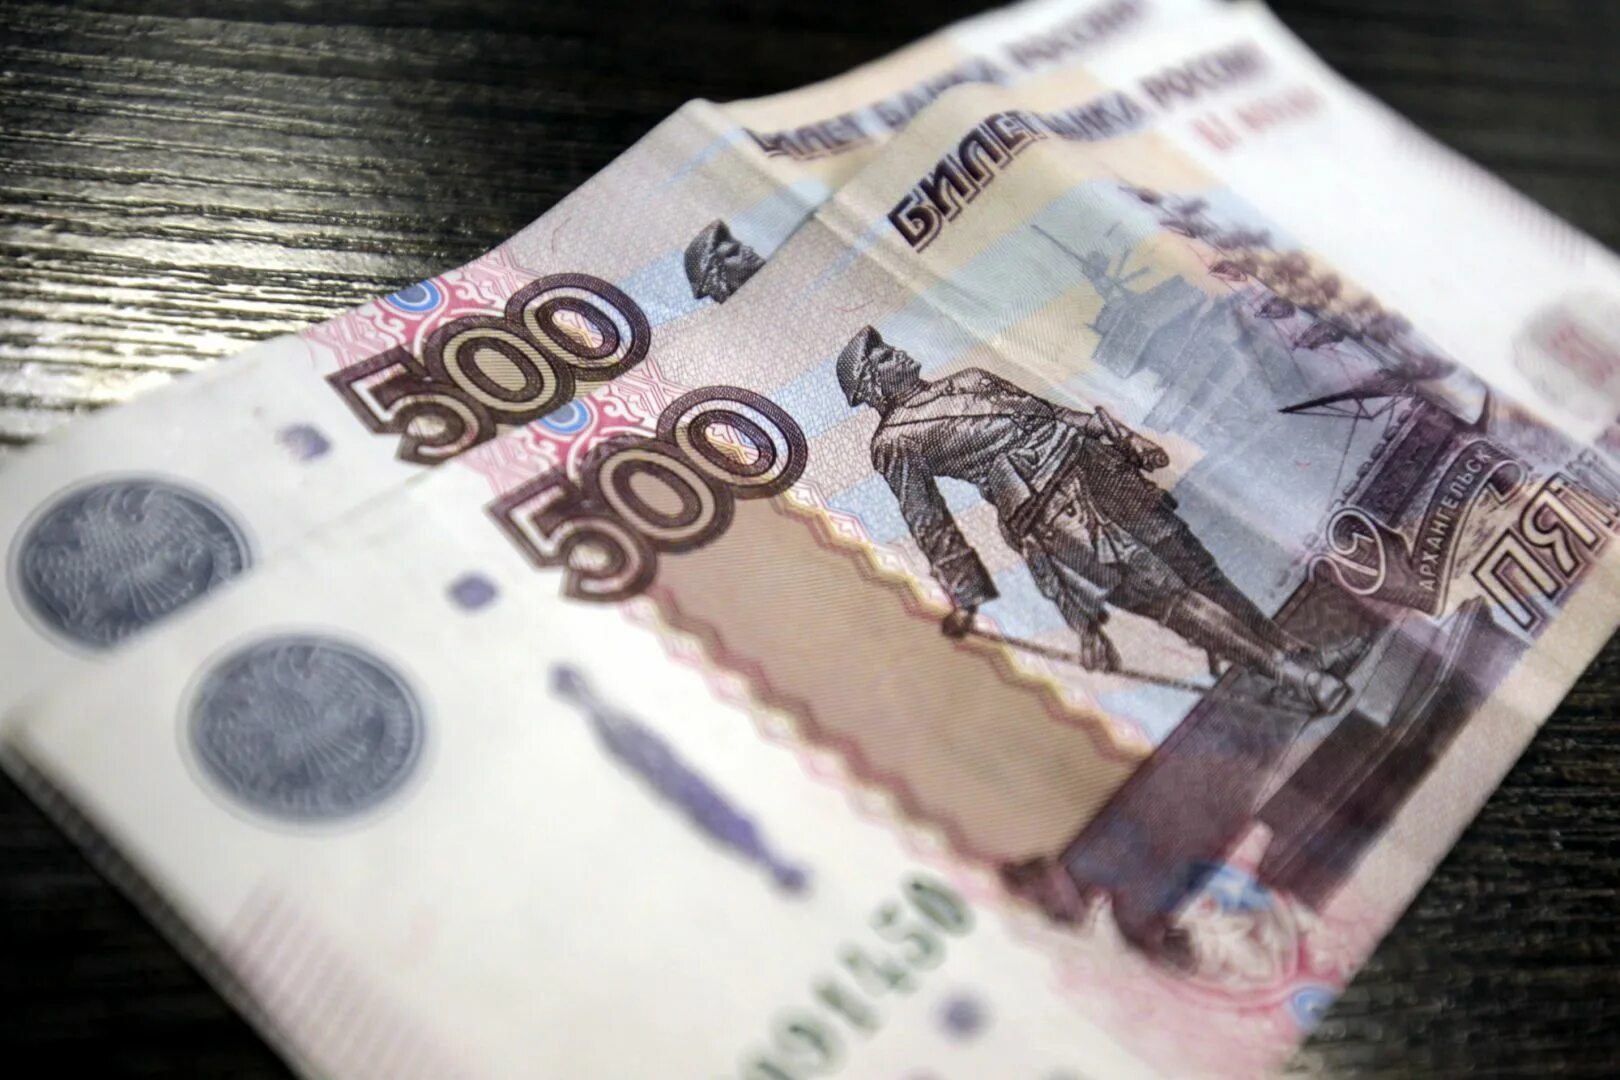 500 Рублей. Купюра 500 рублей. Деньги 500 рублей. Банкнота 500 рублей.